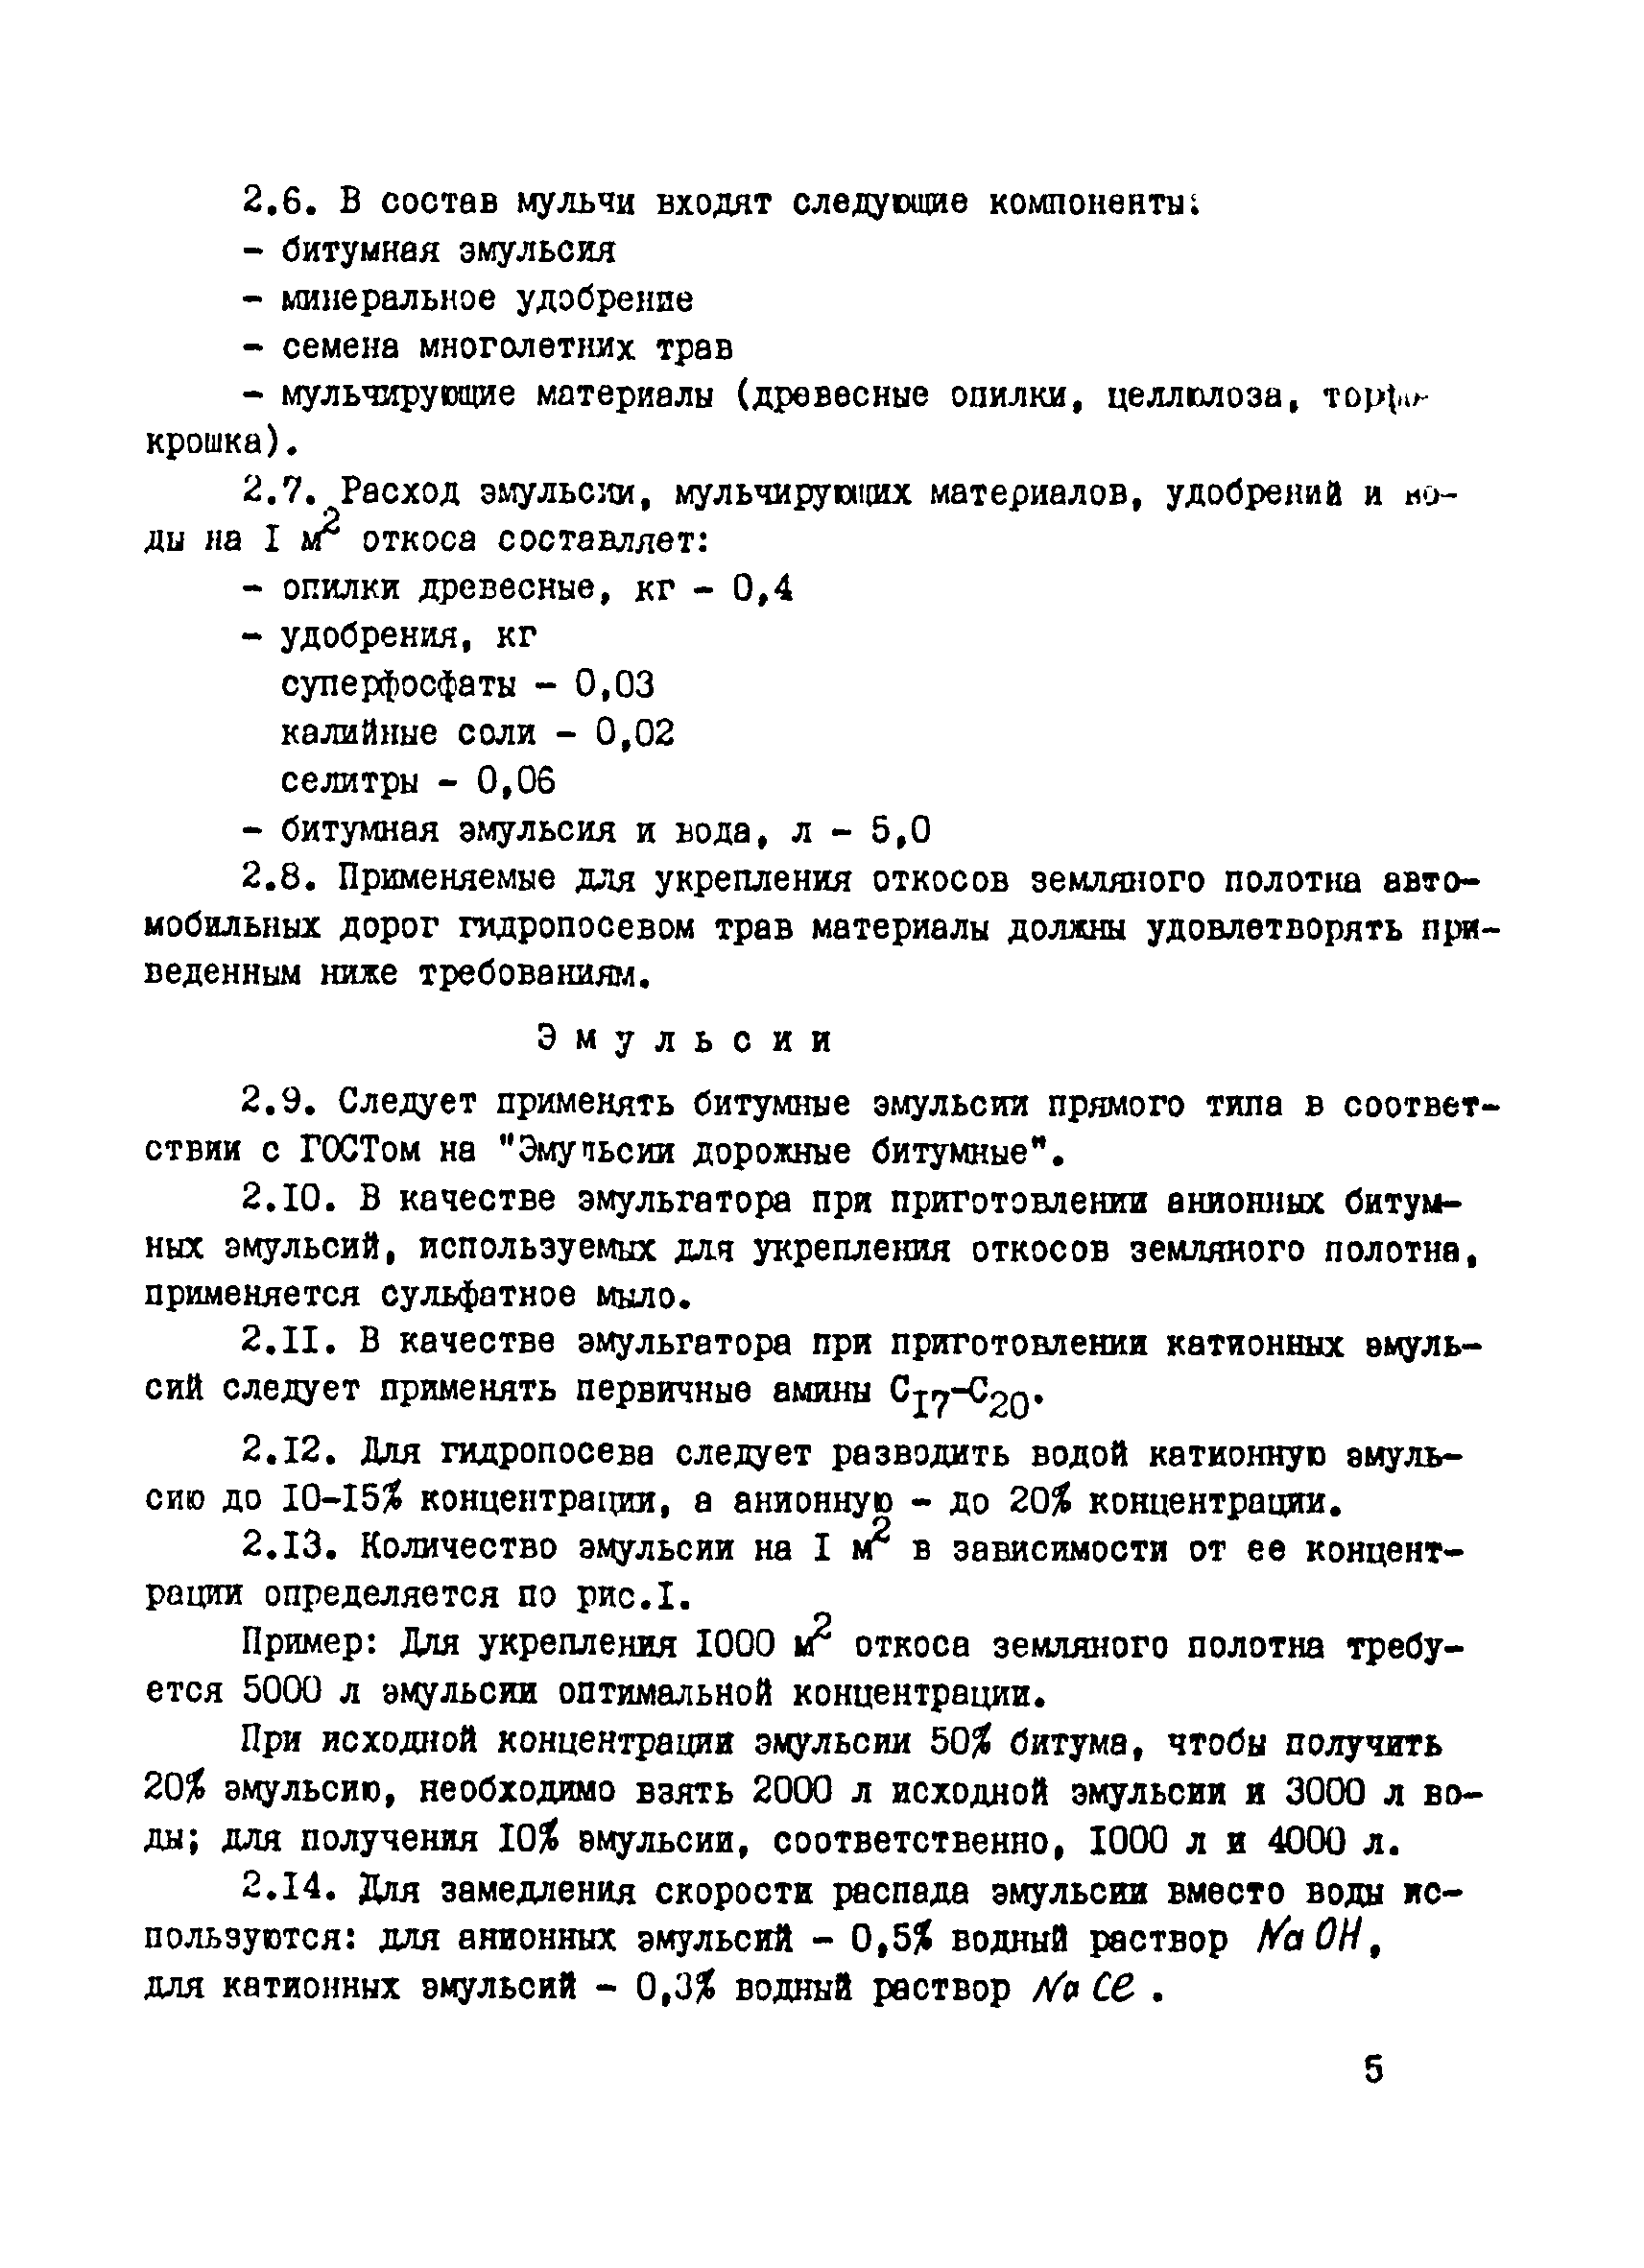 ВСН 17-77/Миндорстрой БССР